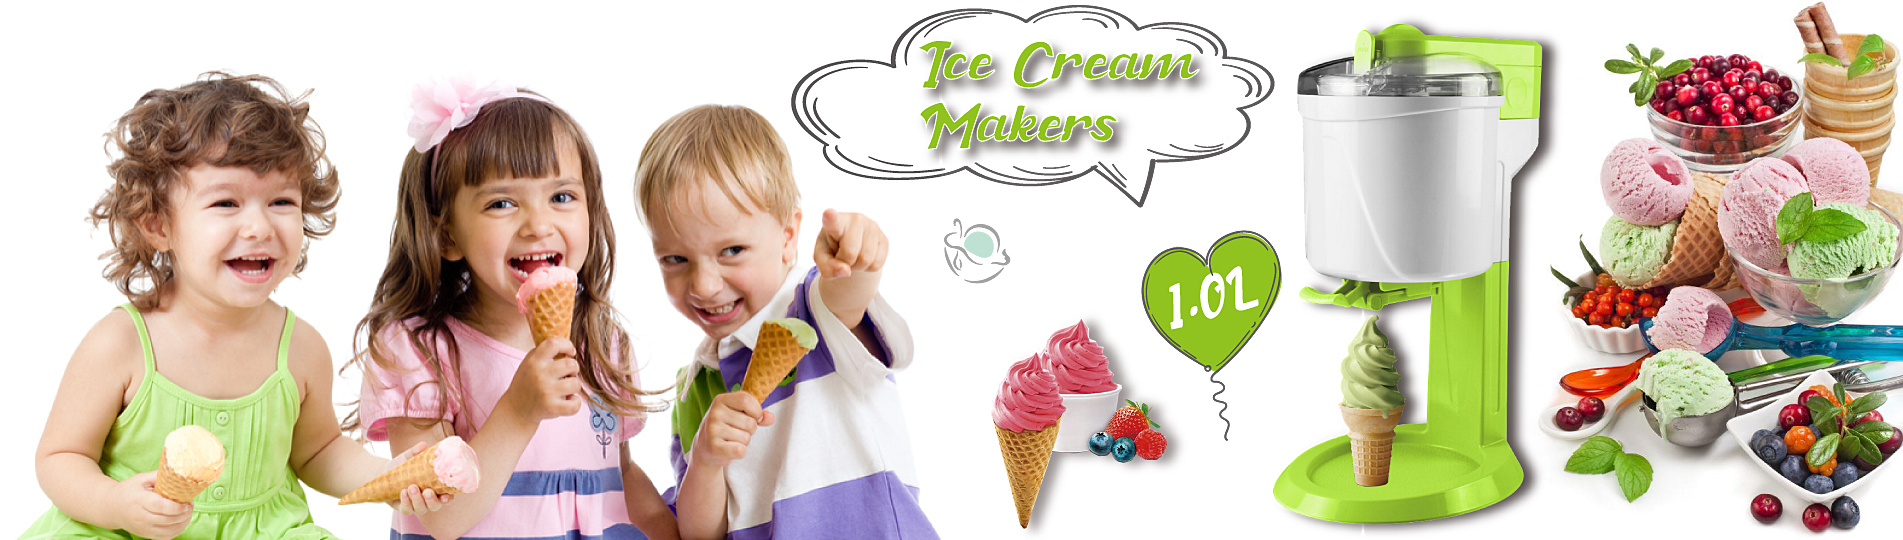 ice cream makers